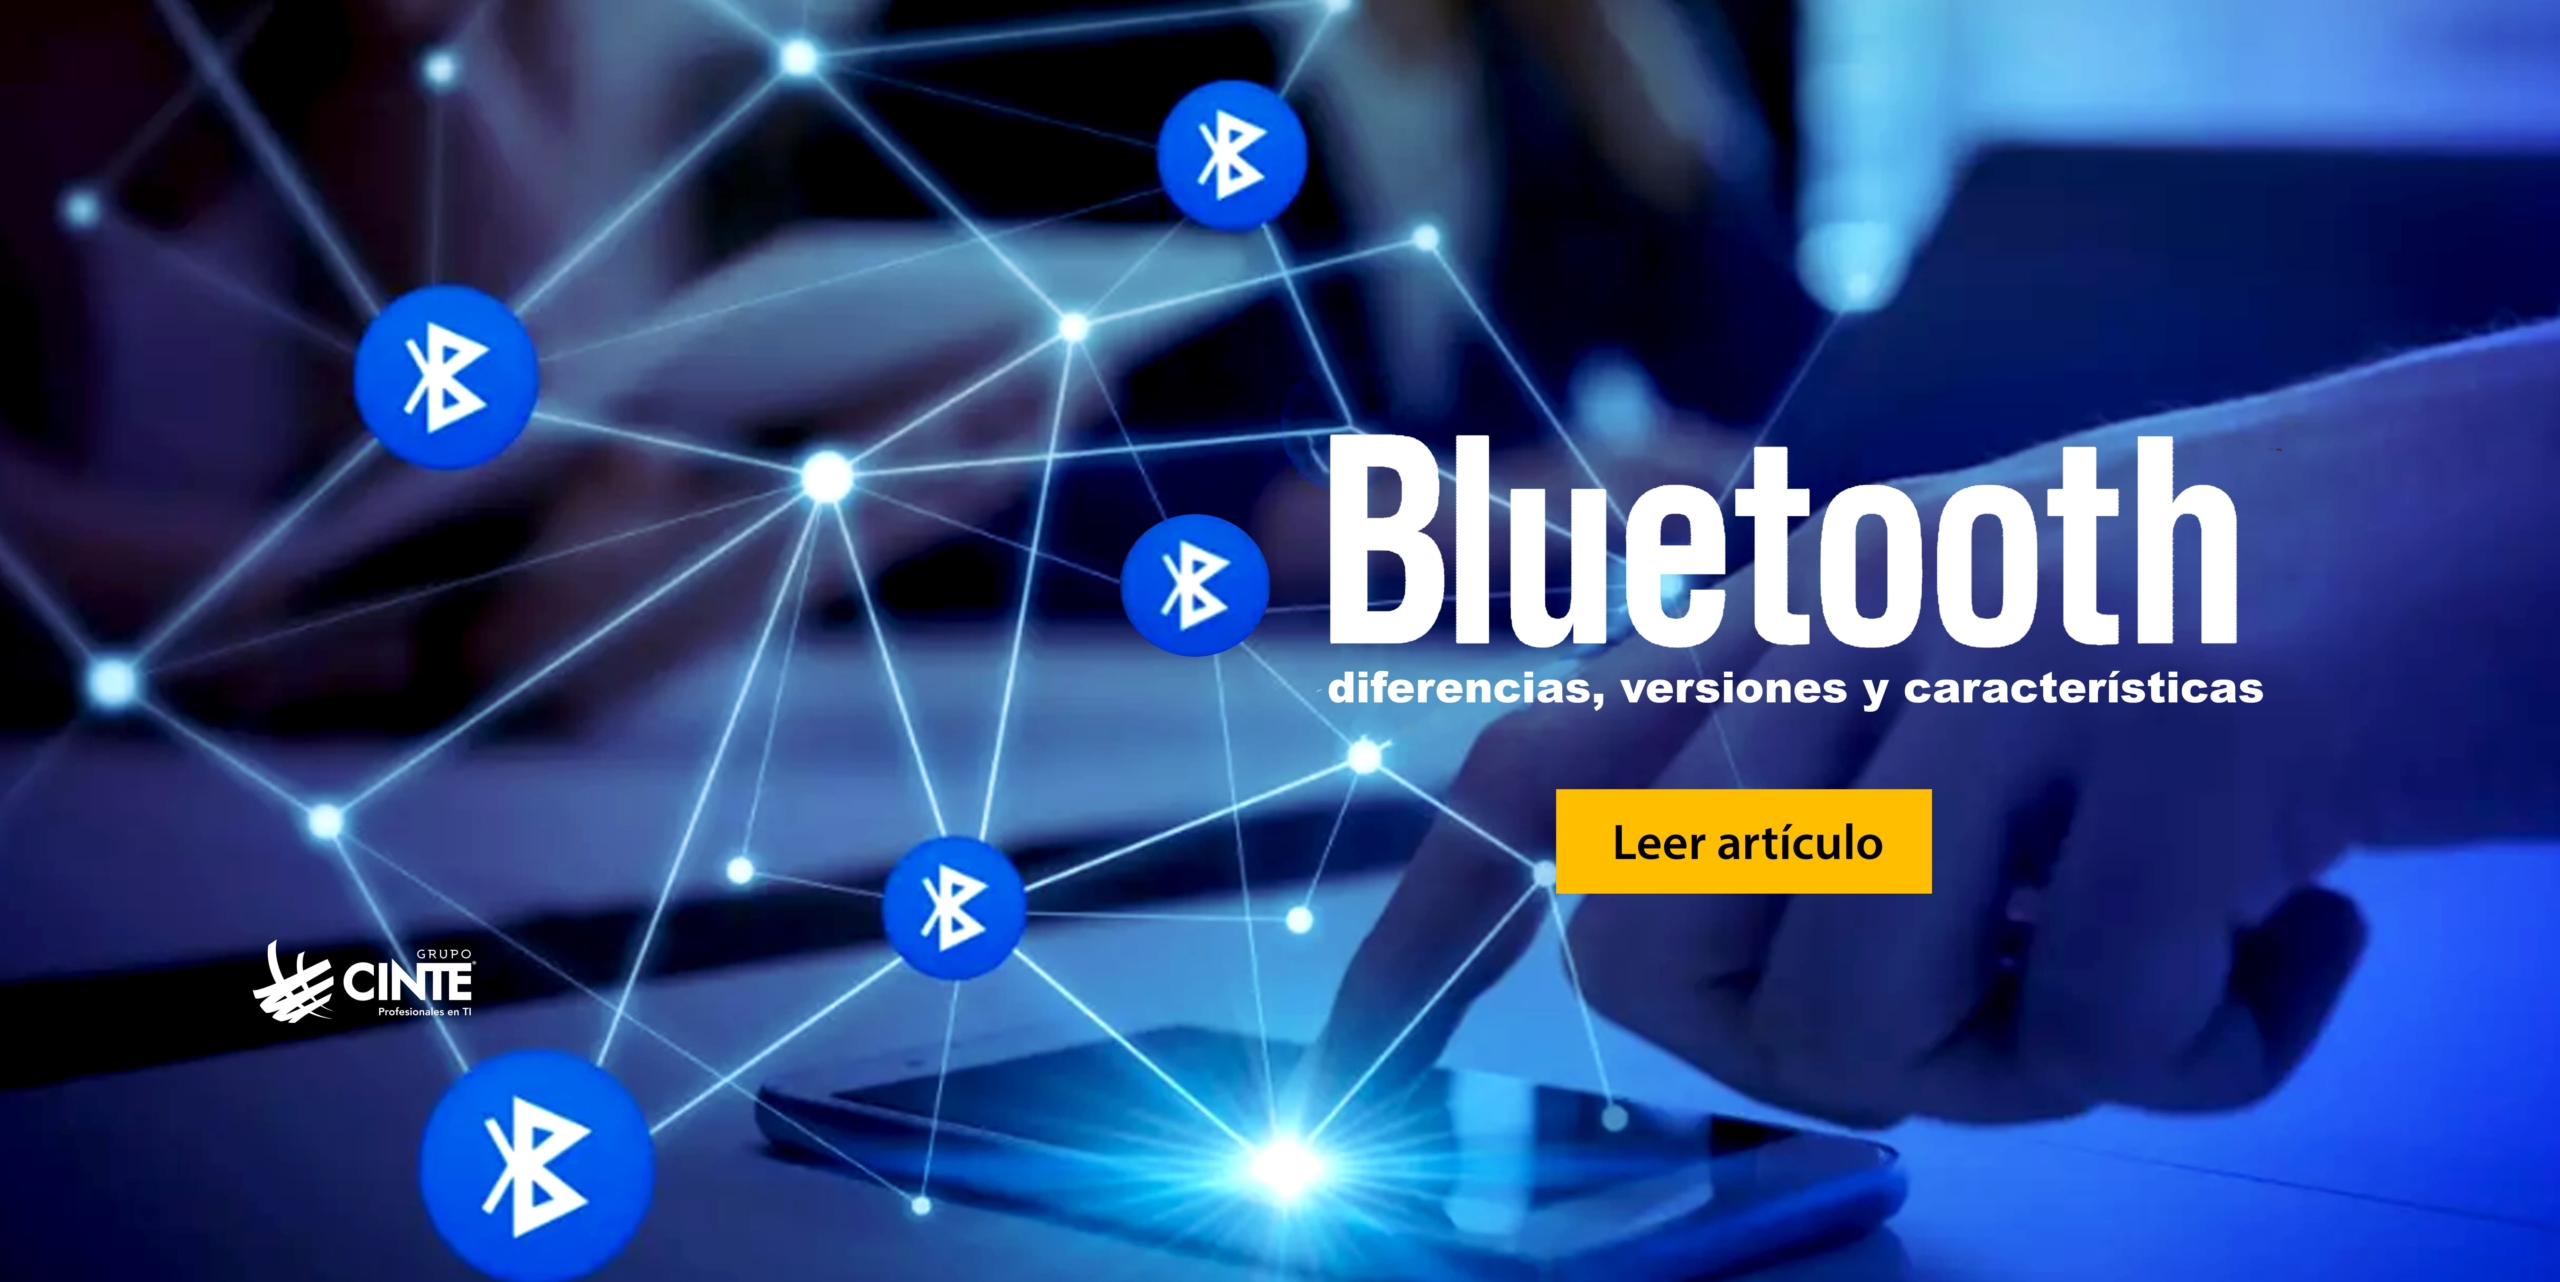 Bluetooth: diferencias, versiones y características